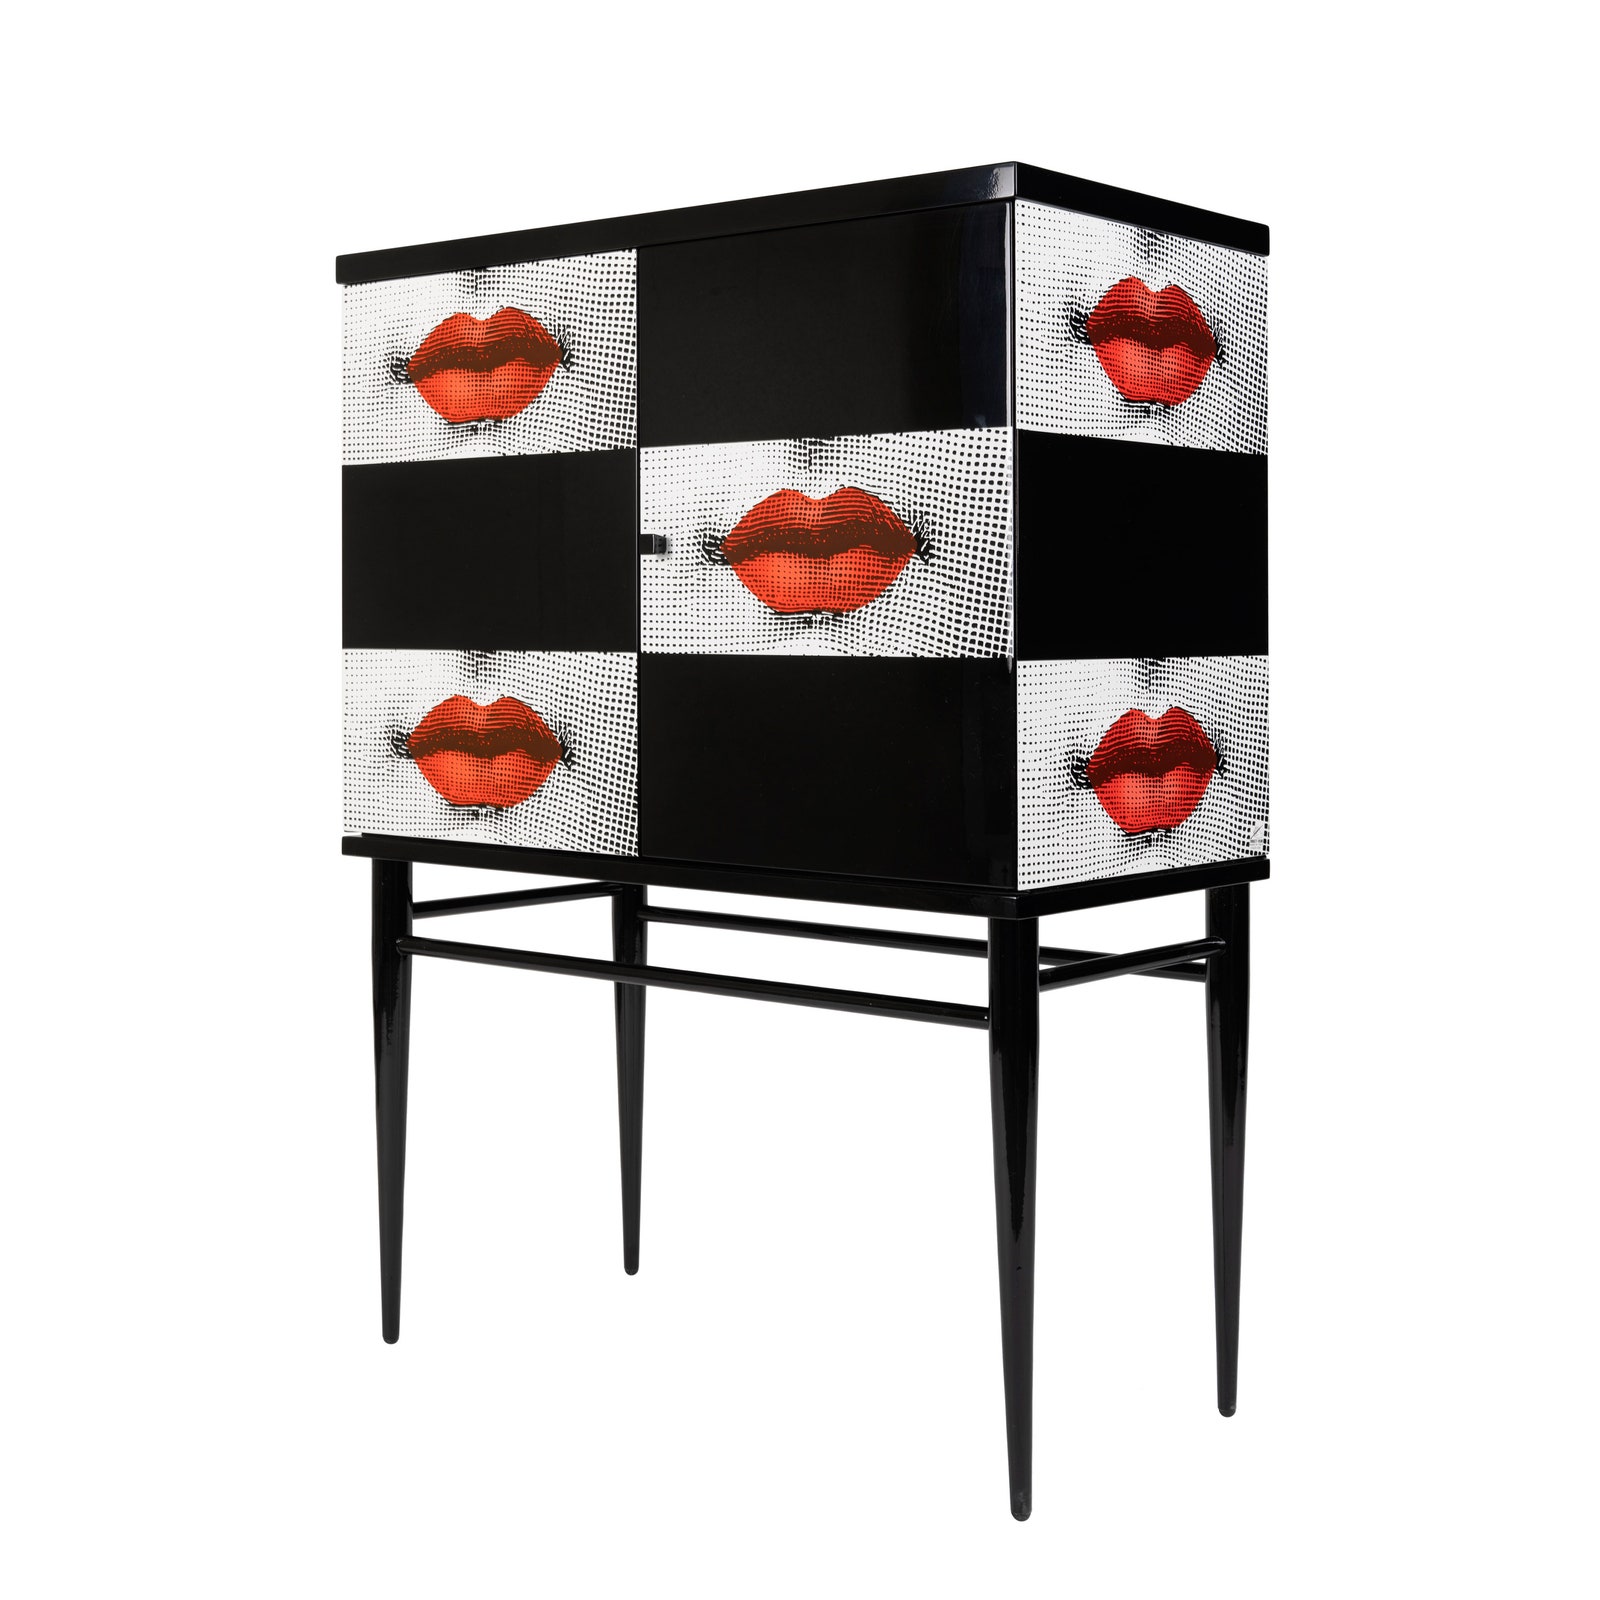 Поцелуй от Fornasetti новая коллекция мебели и аксессуаров